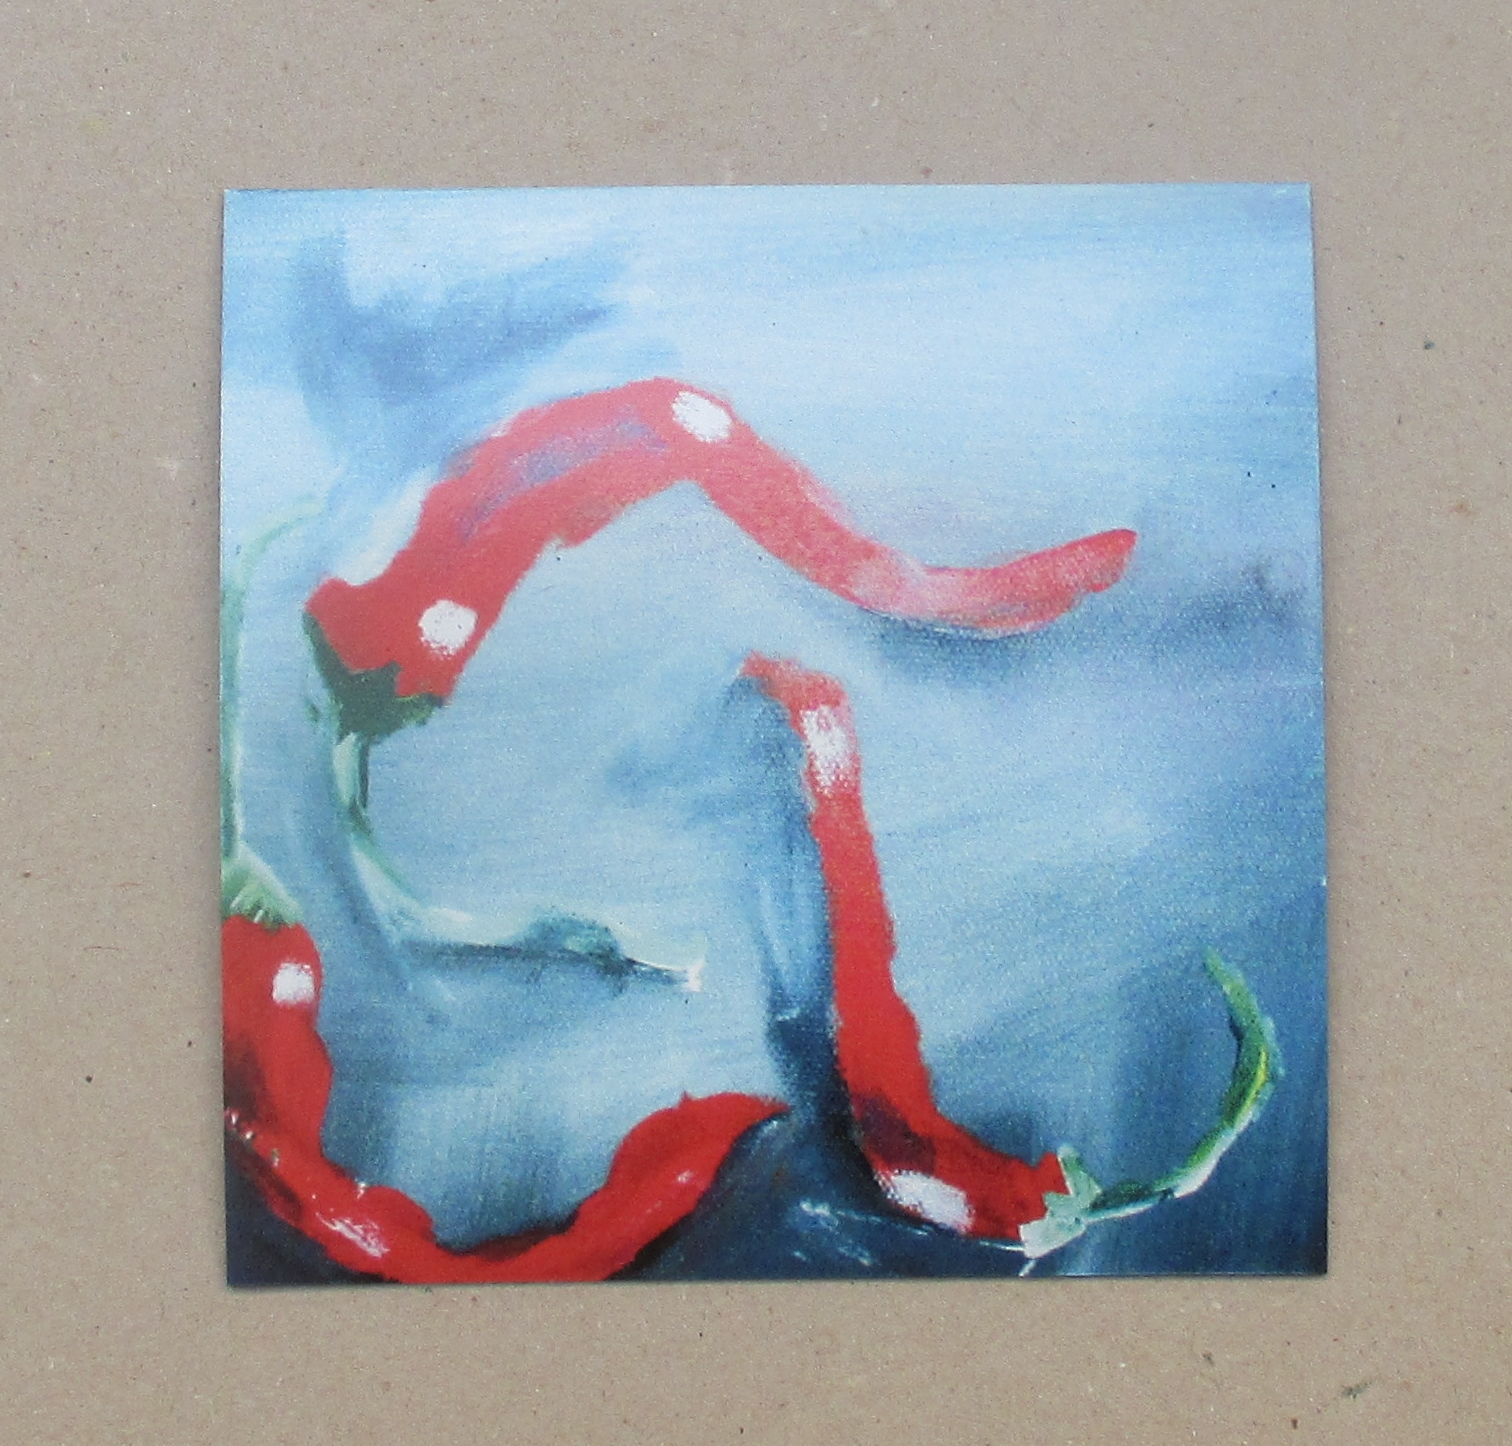 1x Chilli Küchenbild 10x10 cm auf Magnet gedruckt - signiert/x/10 numeriert kostenloser Versand 2